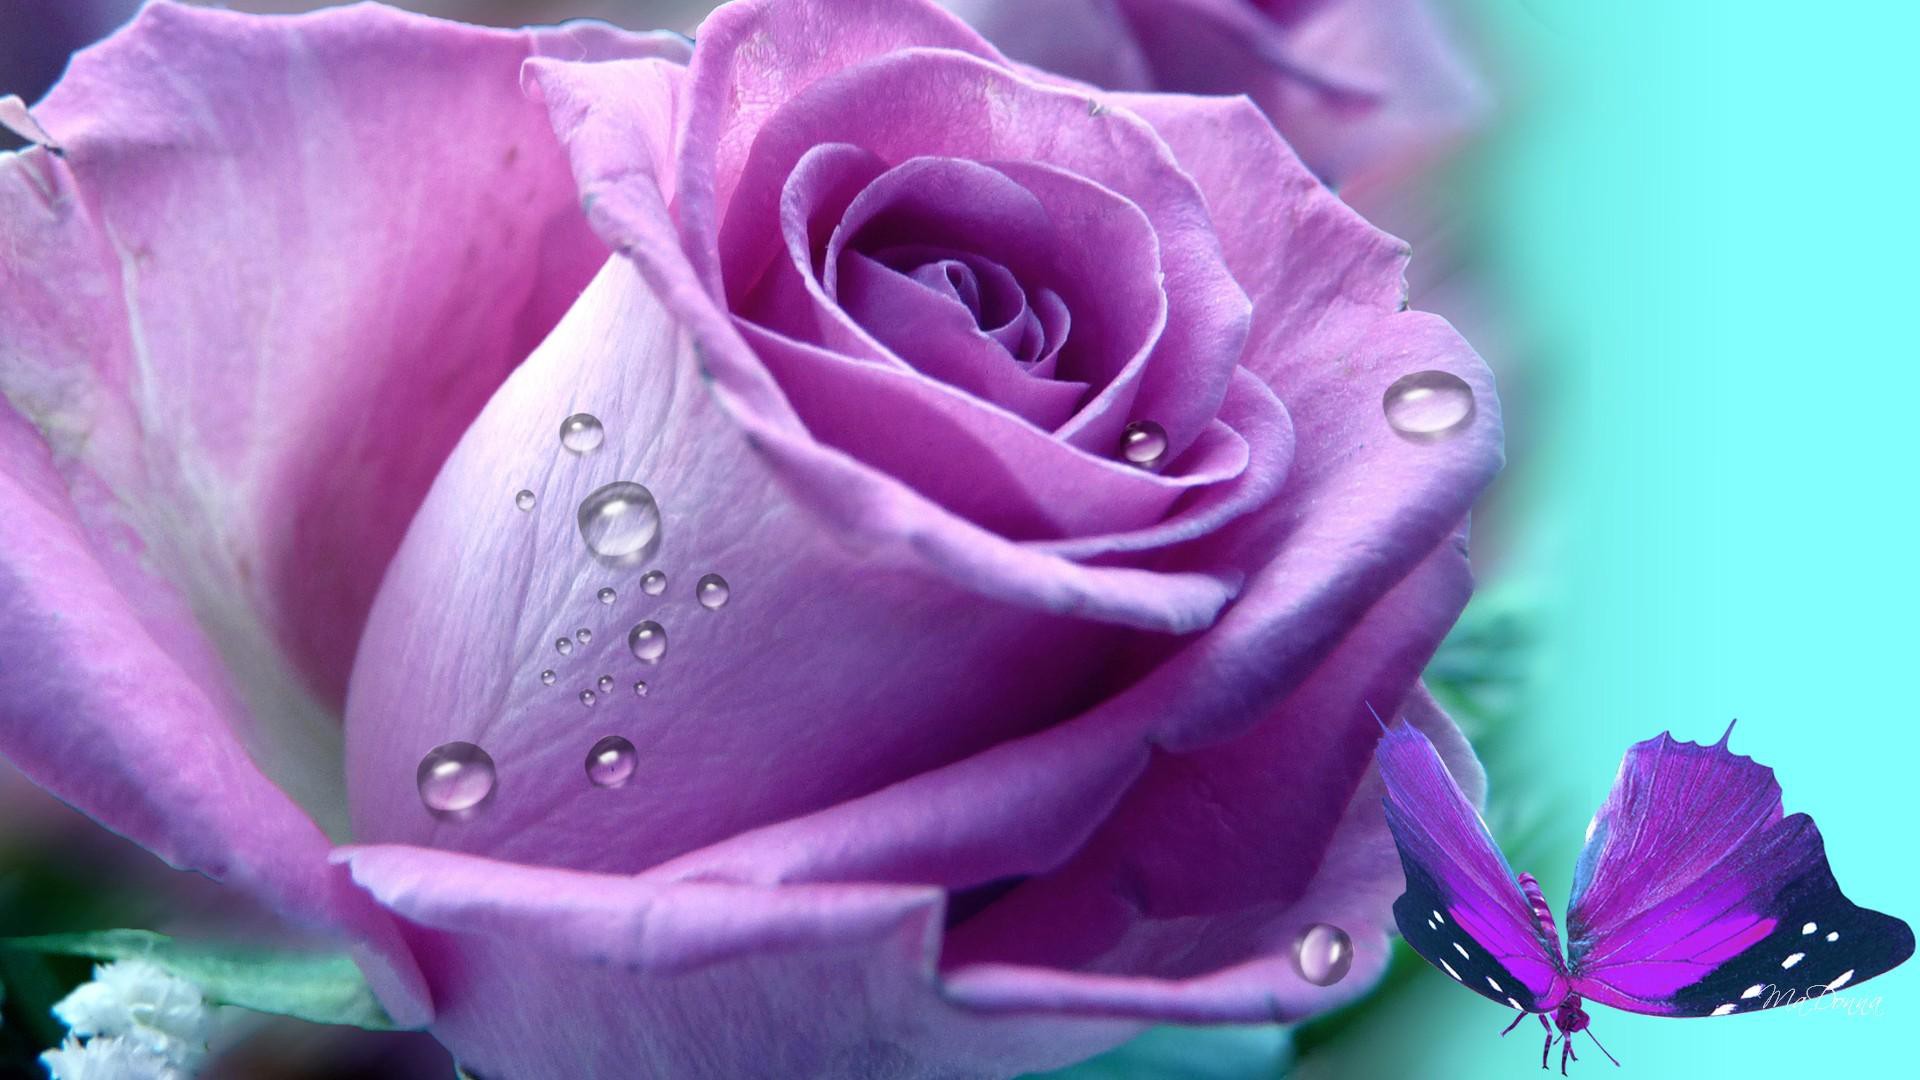 Скачать обои бесплатно Капли, Цветок, Роза, Бабочка, Фиолетовый Цветок, Художественные картинка на рабочий стол ПК